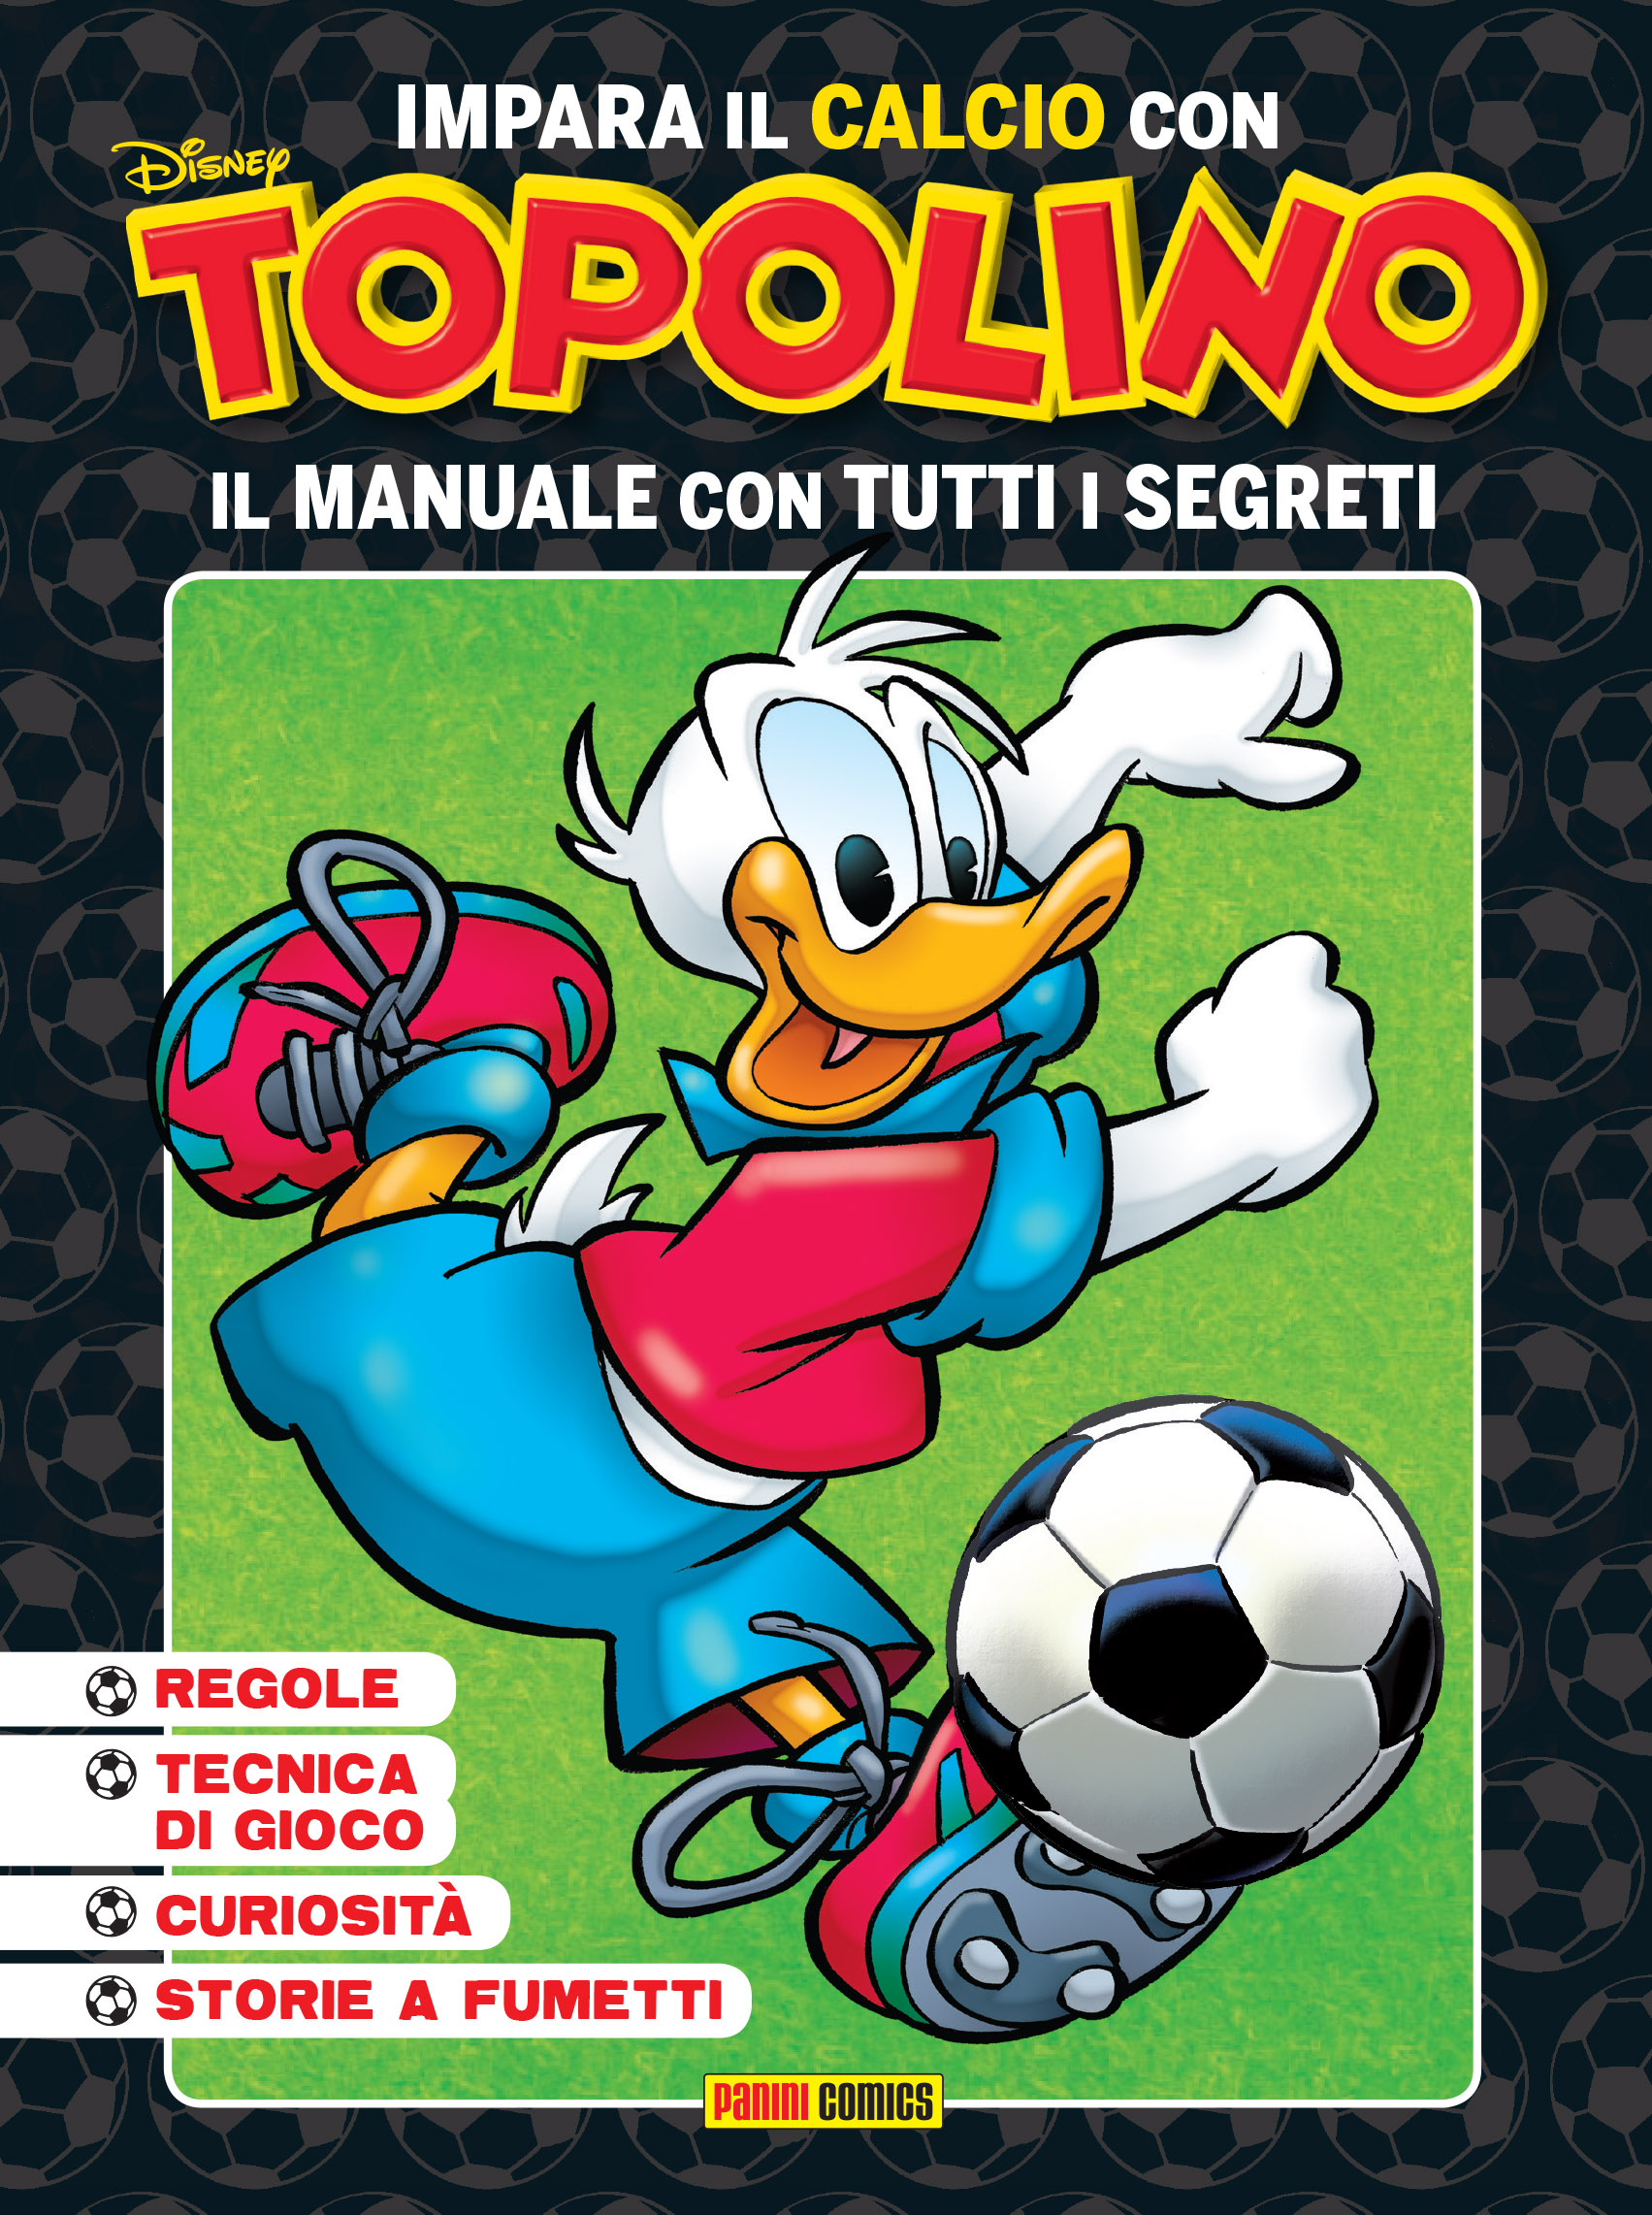 Topolino presenta Impara il Calcio con Topolino